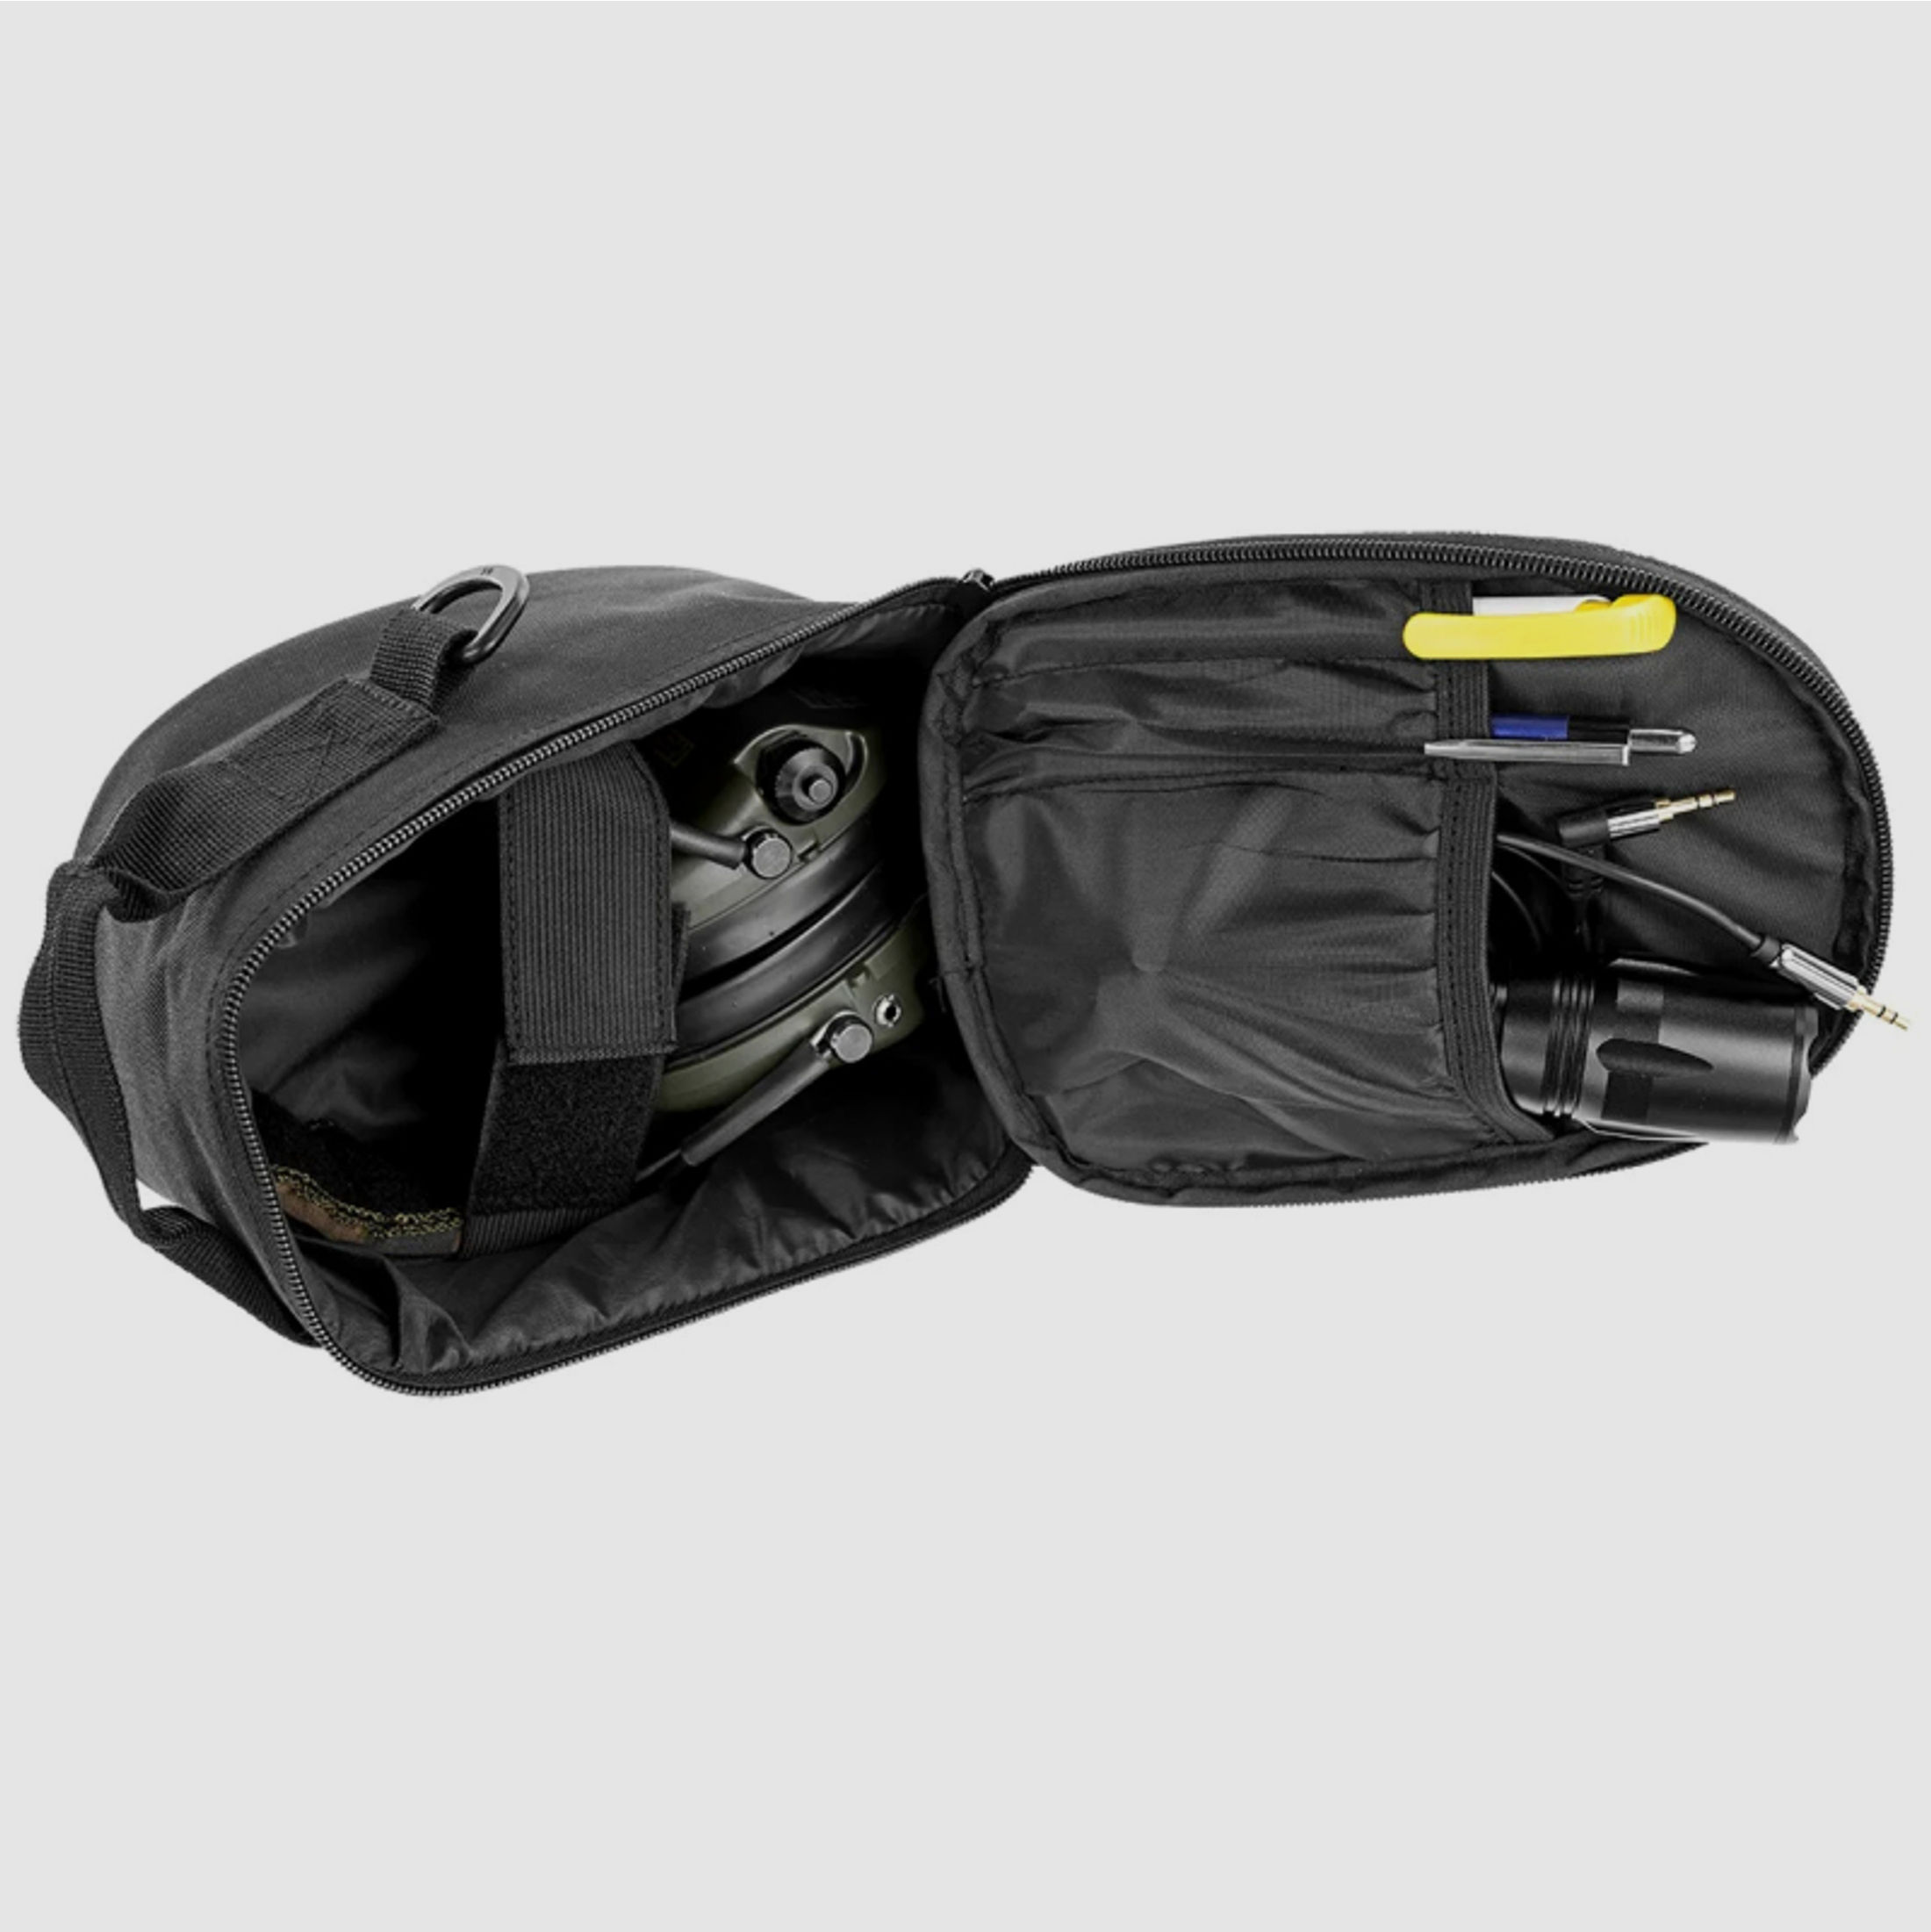 Militär Fernglas Tasche für 8x30 Ferngläser, Fernglas oder Gehörschutz, schwarz, tactical bag